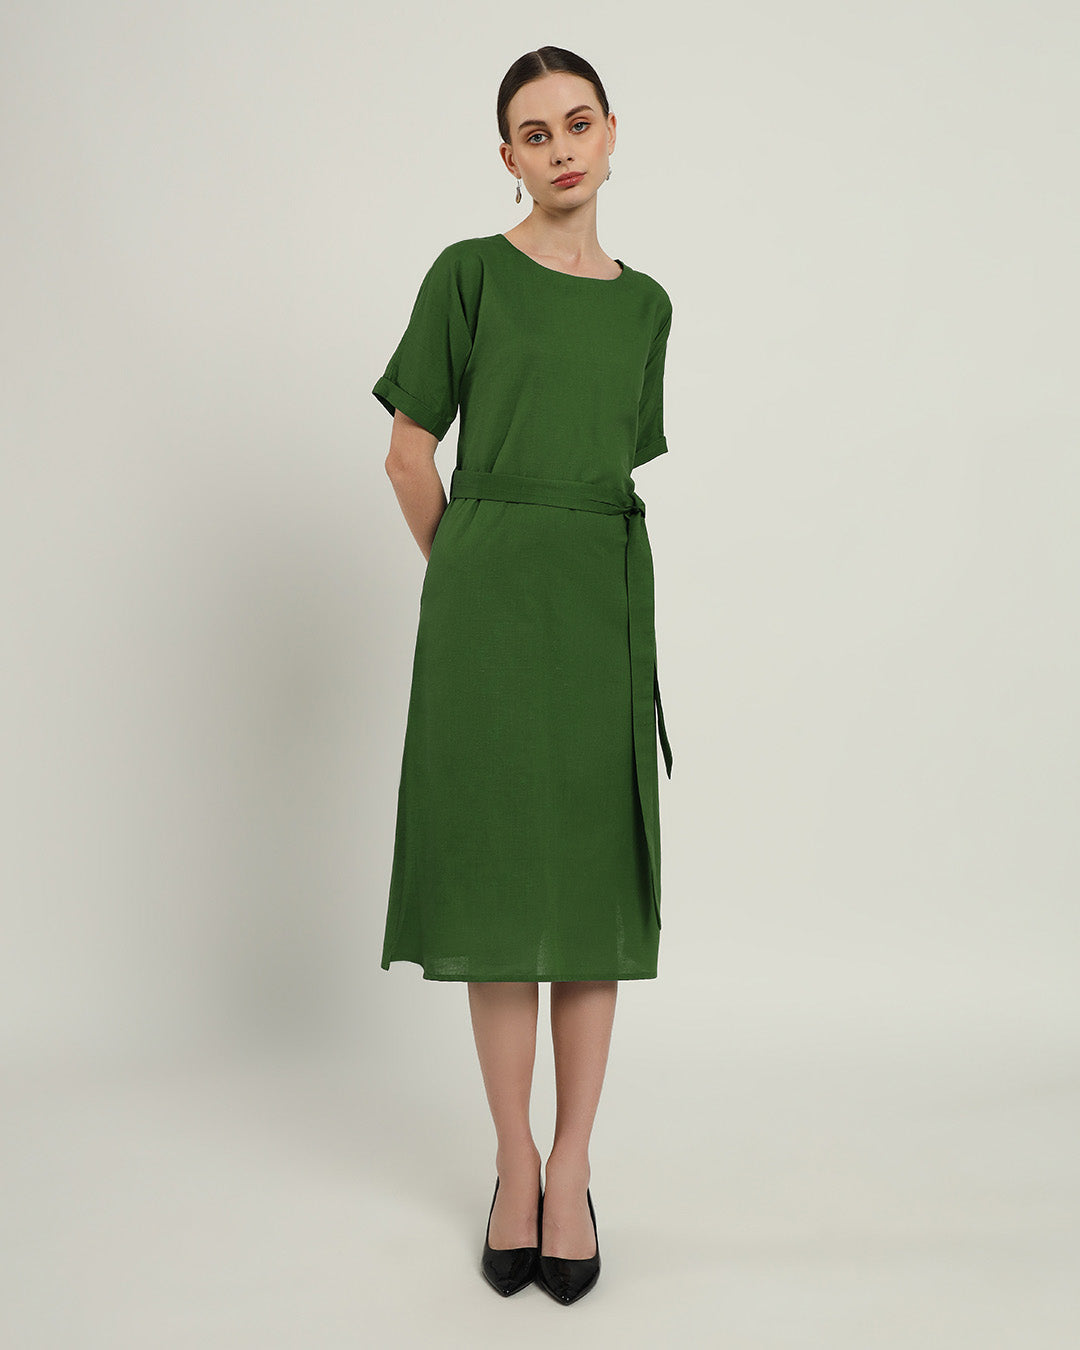 The Tayma Emerald Dress